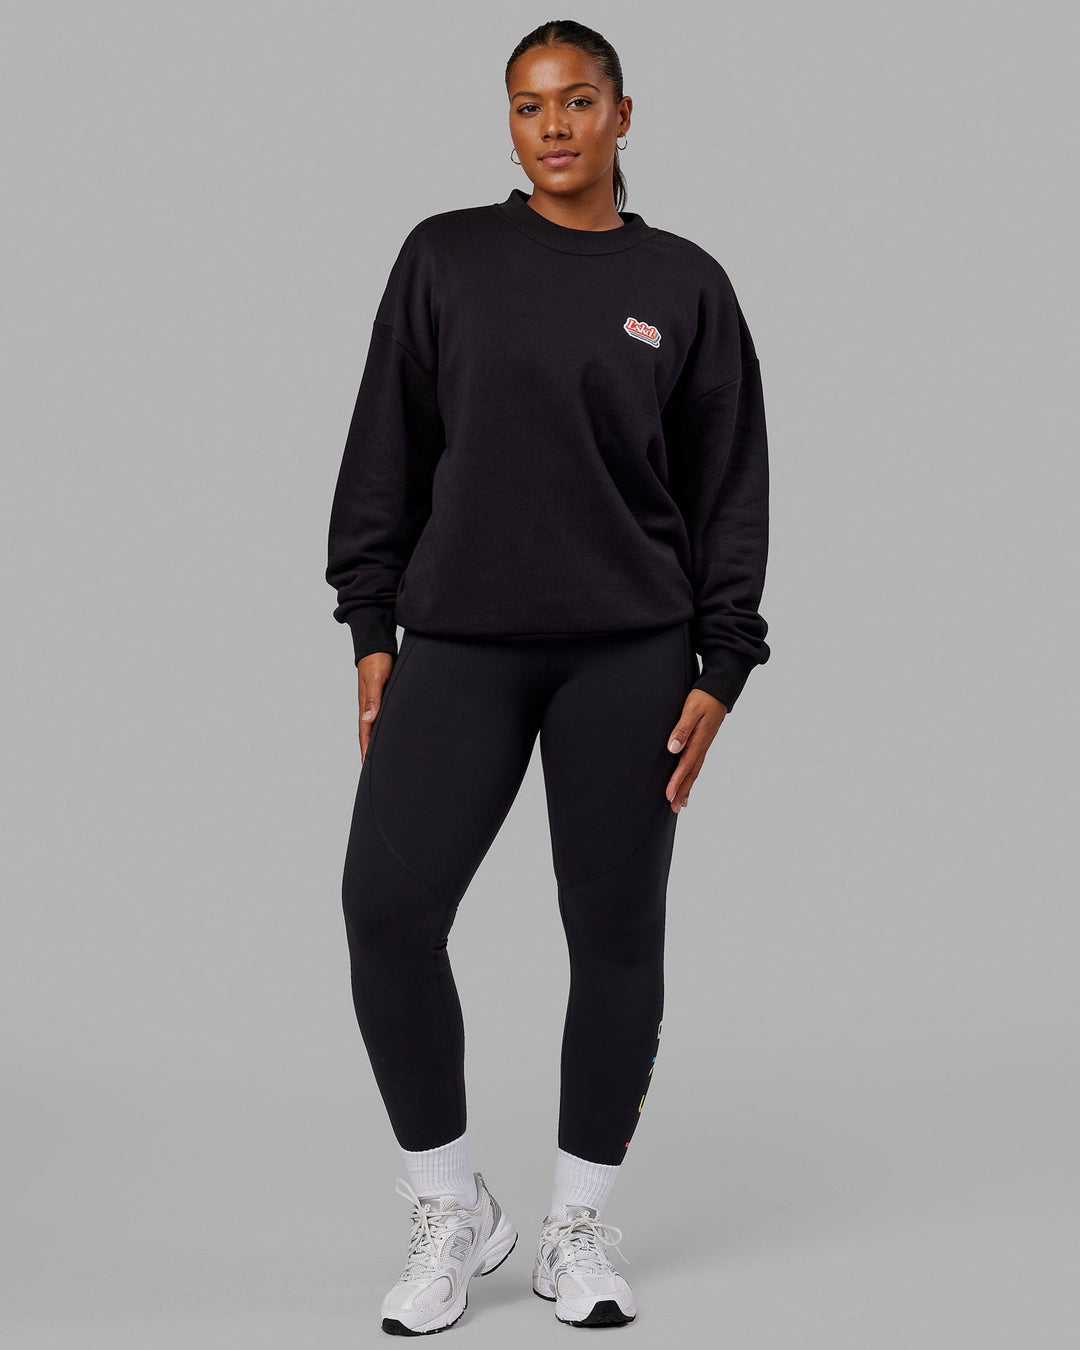 Woman wearing Unisex Radiate Sweater Oversize - Black